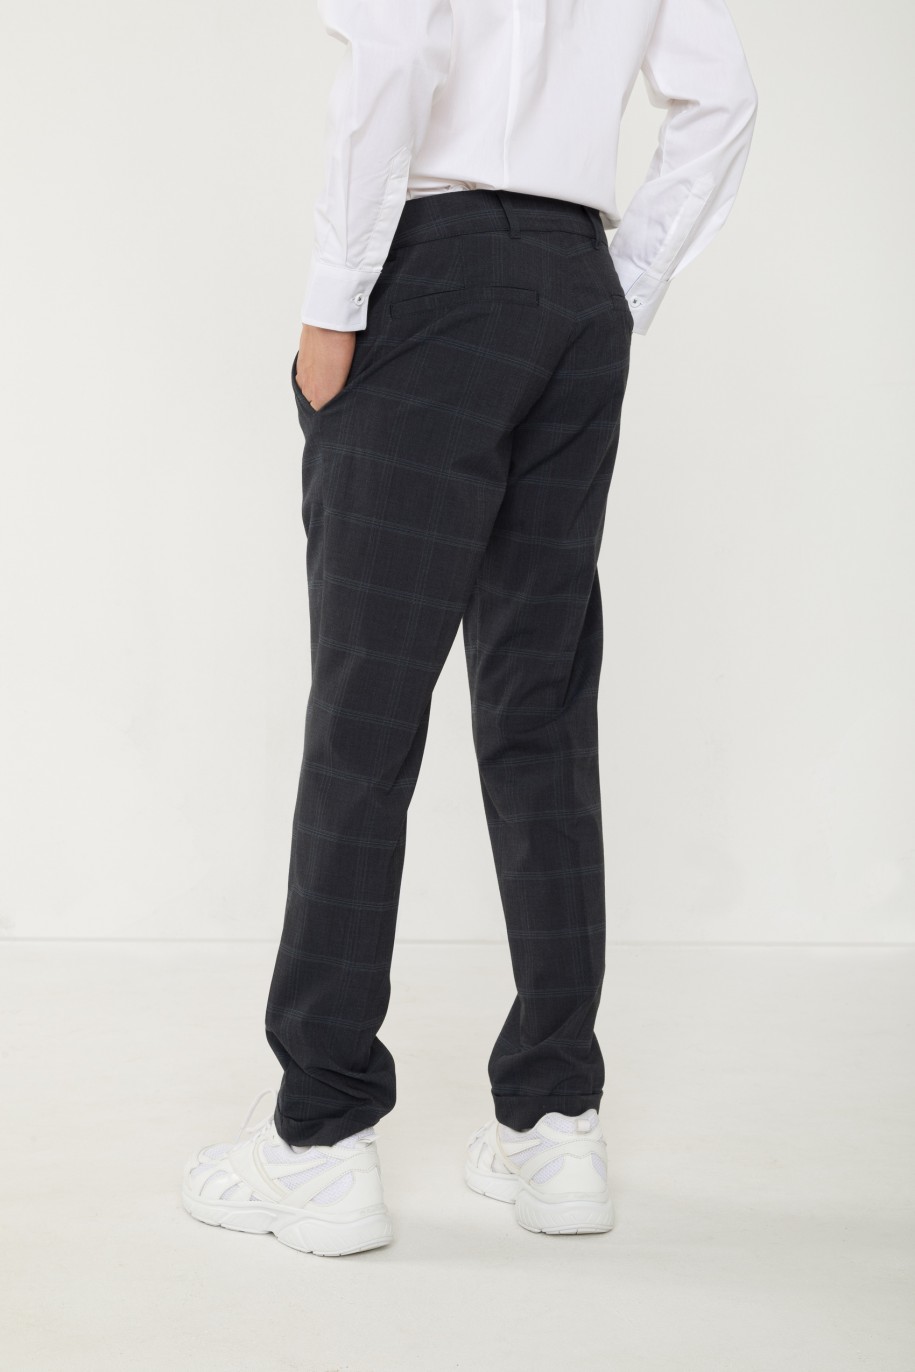 Granatowe spodnie garniturowe w kratę - 42003